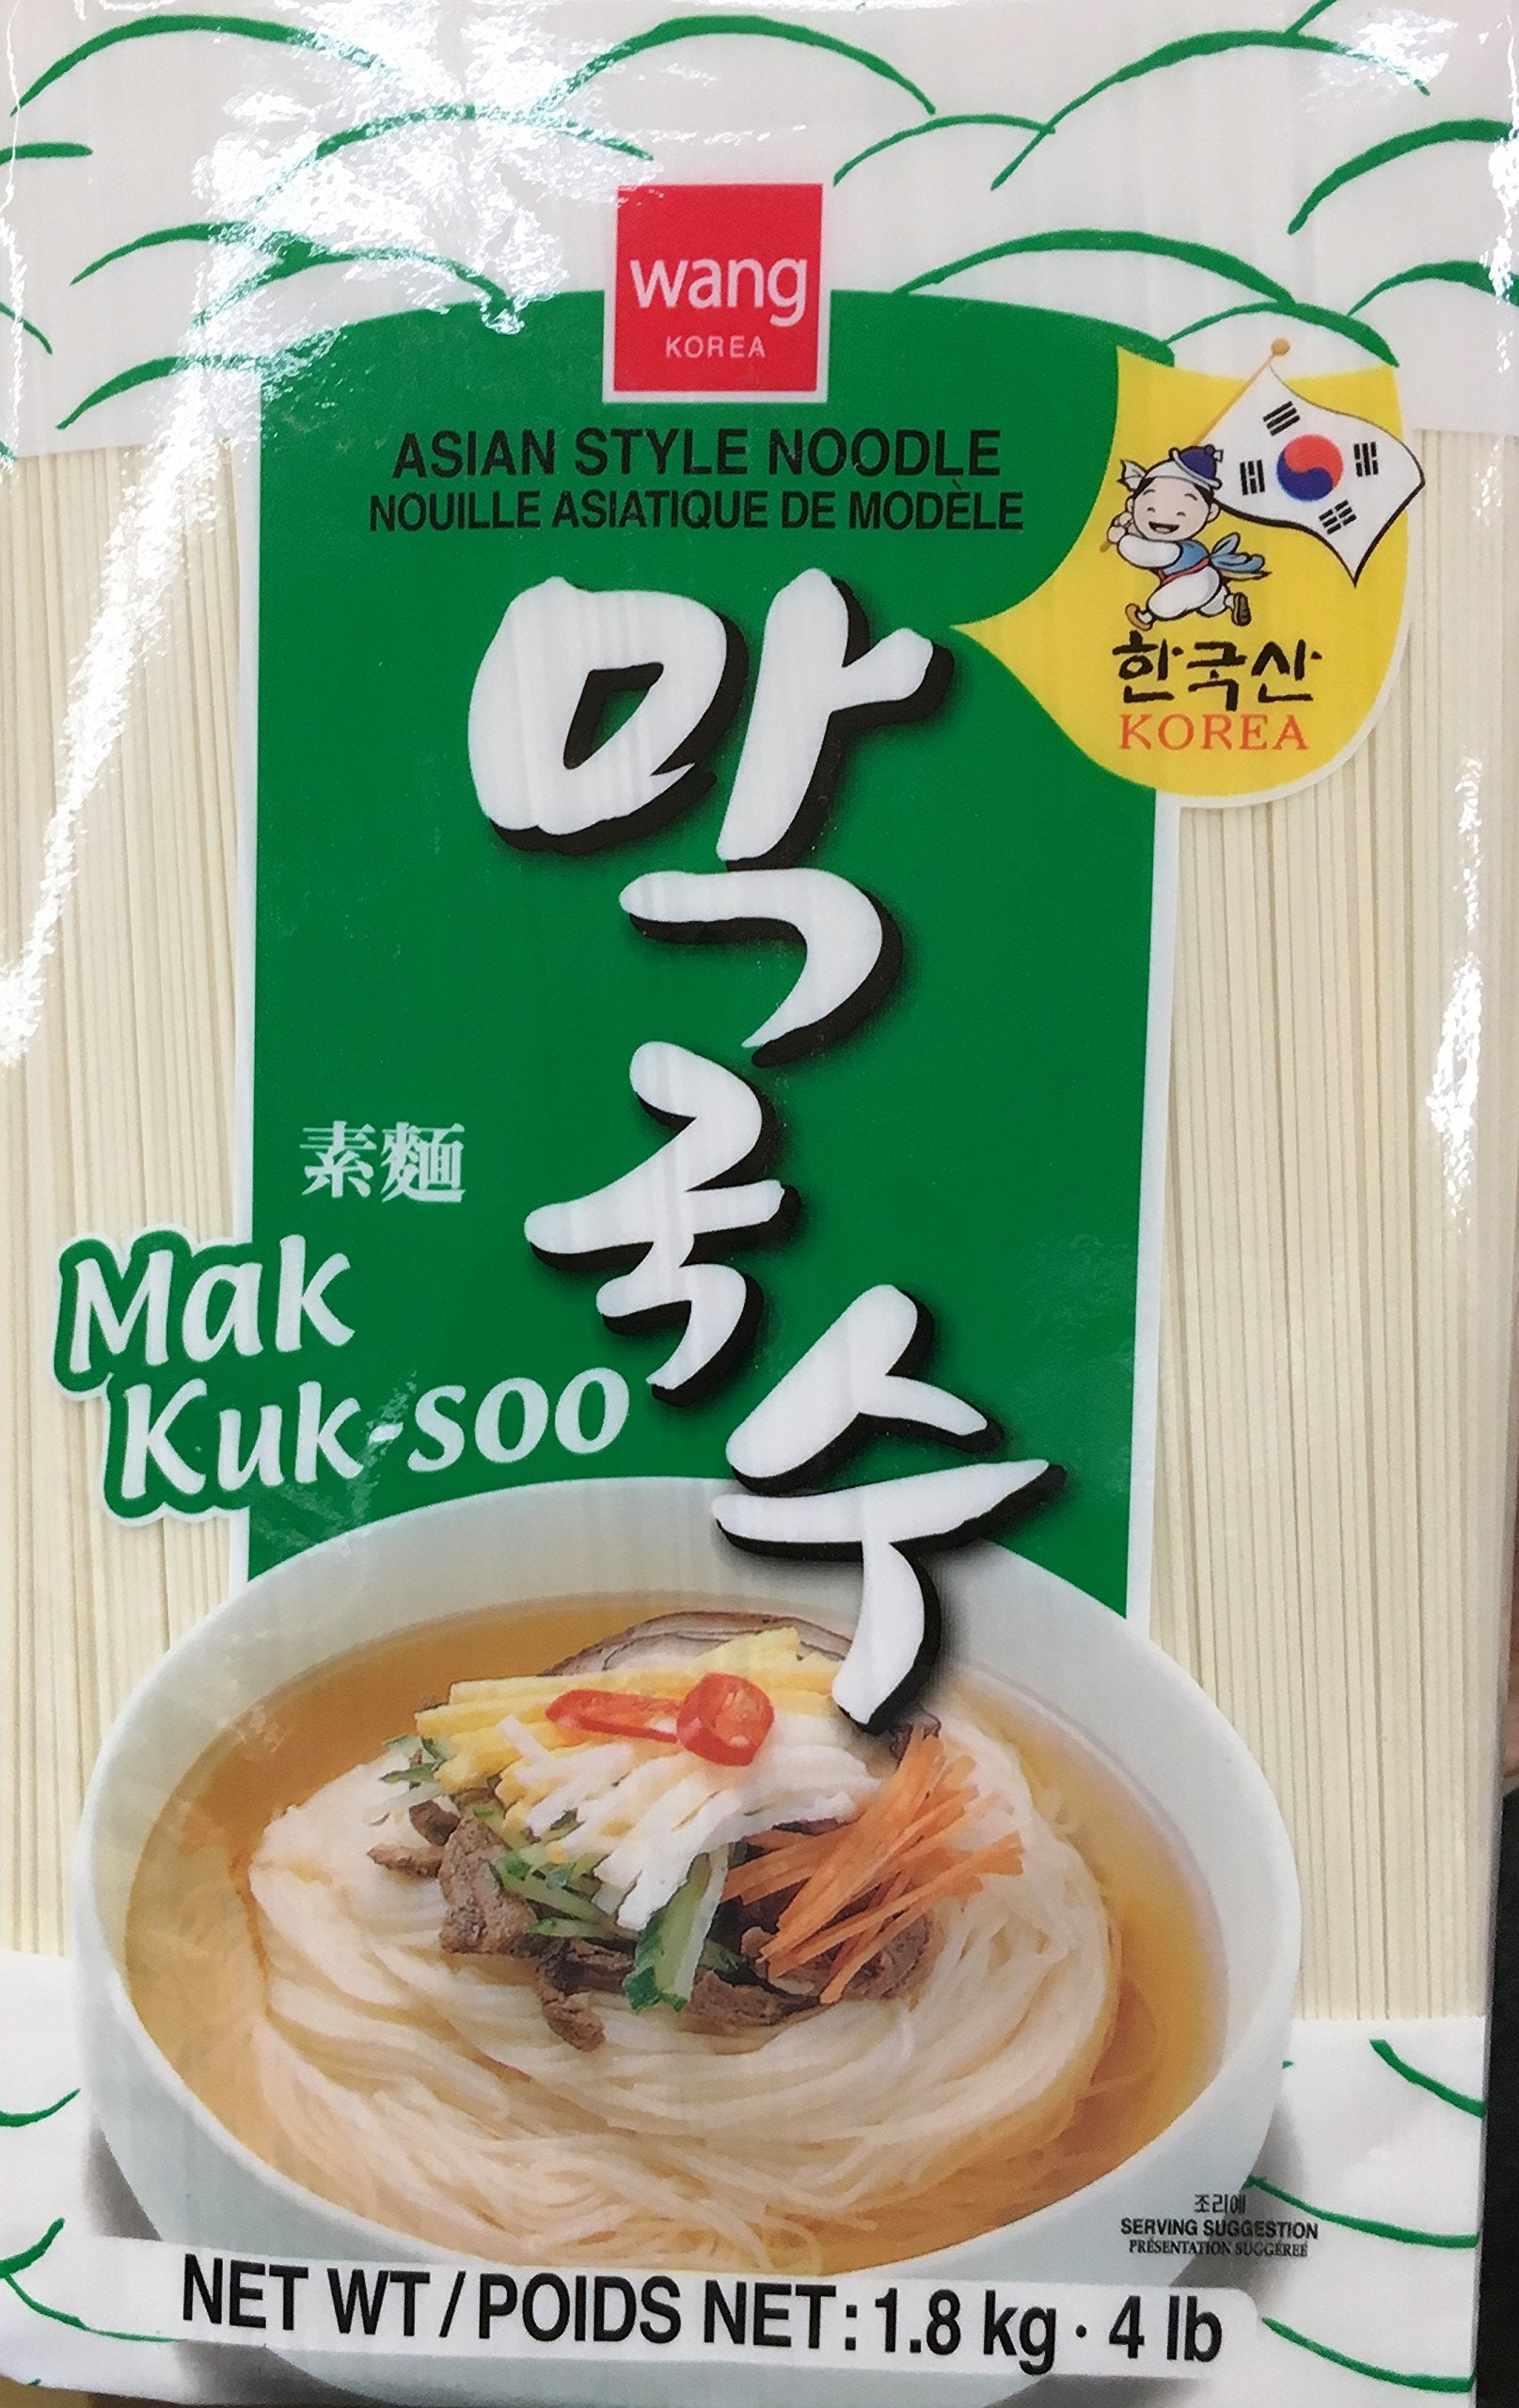 4 LB Wang Korea Asian Style Noodle, Mak Kuk Soo (Pack of 1)